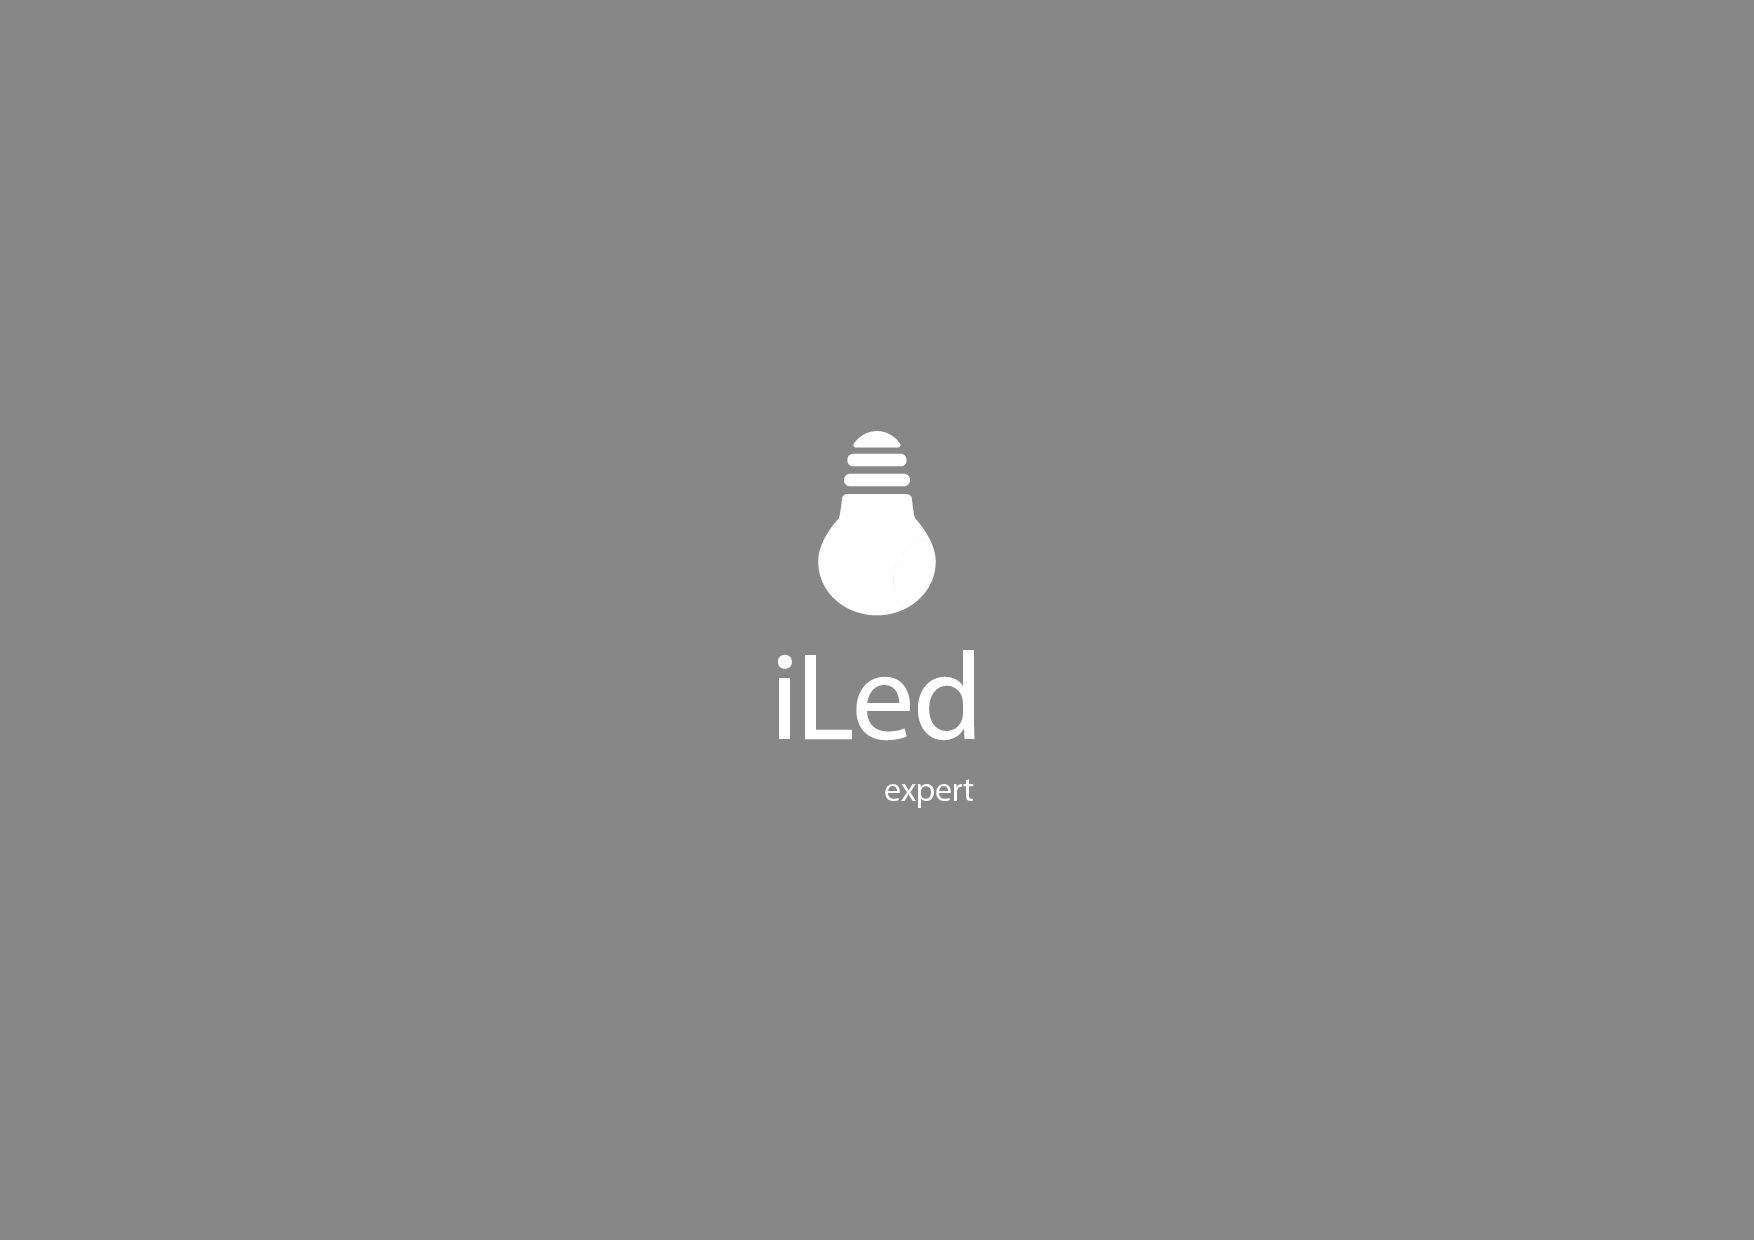 Логотип и фирменный стиль для iLed Expert - дизайнер LilyLilyLily